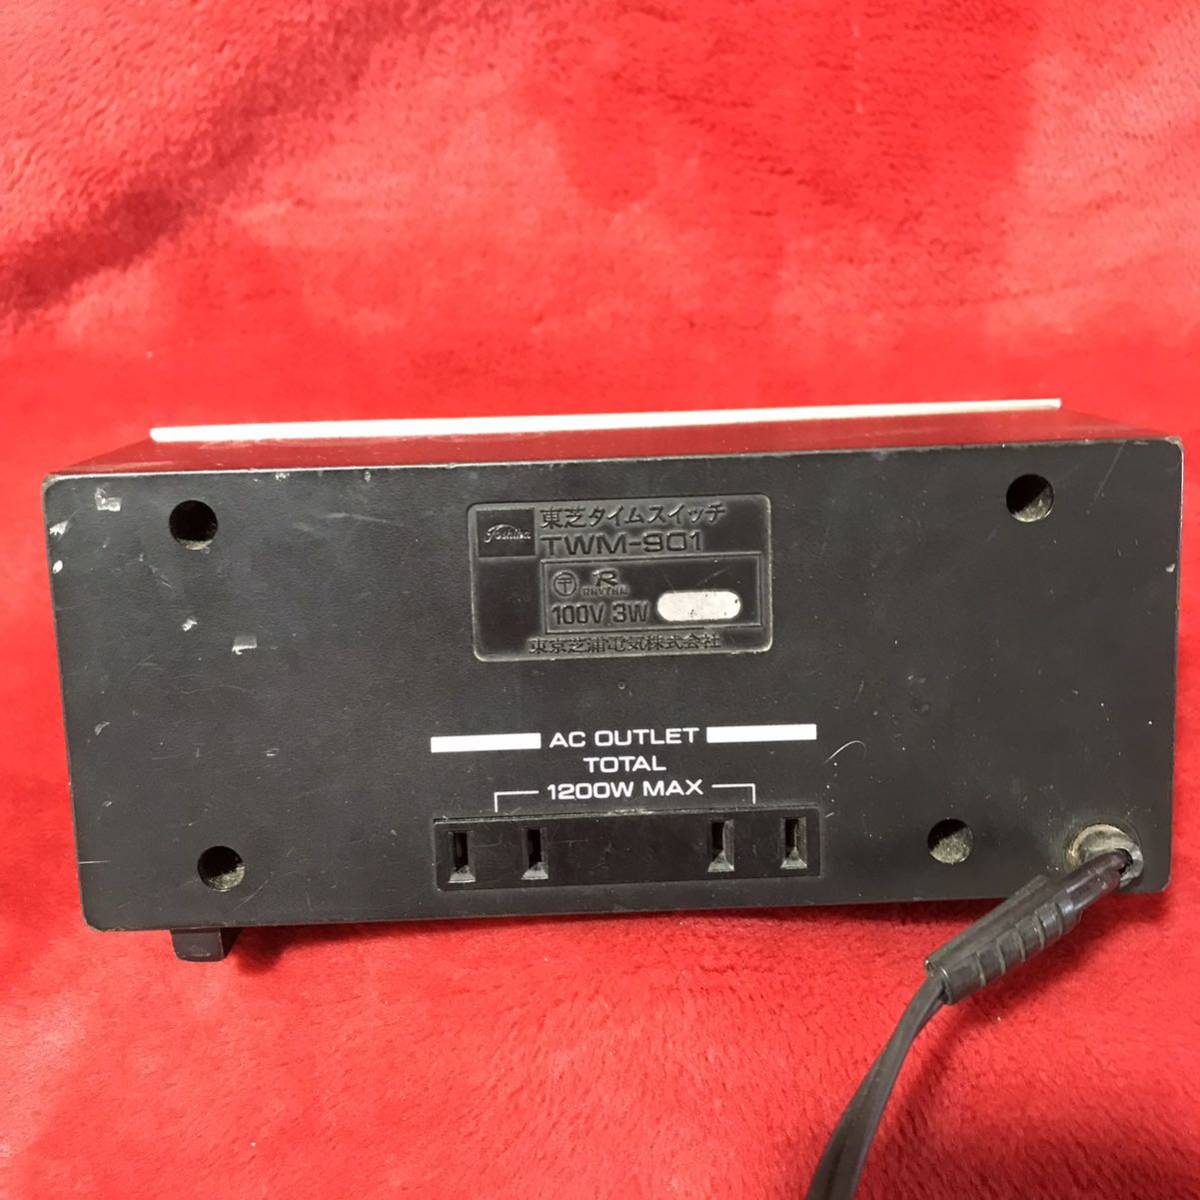 C293 Showa Retro Toshiba время переключатель TWM-901 электризация есть подтверждение рабочего состояния нет интерьер коллекция 